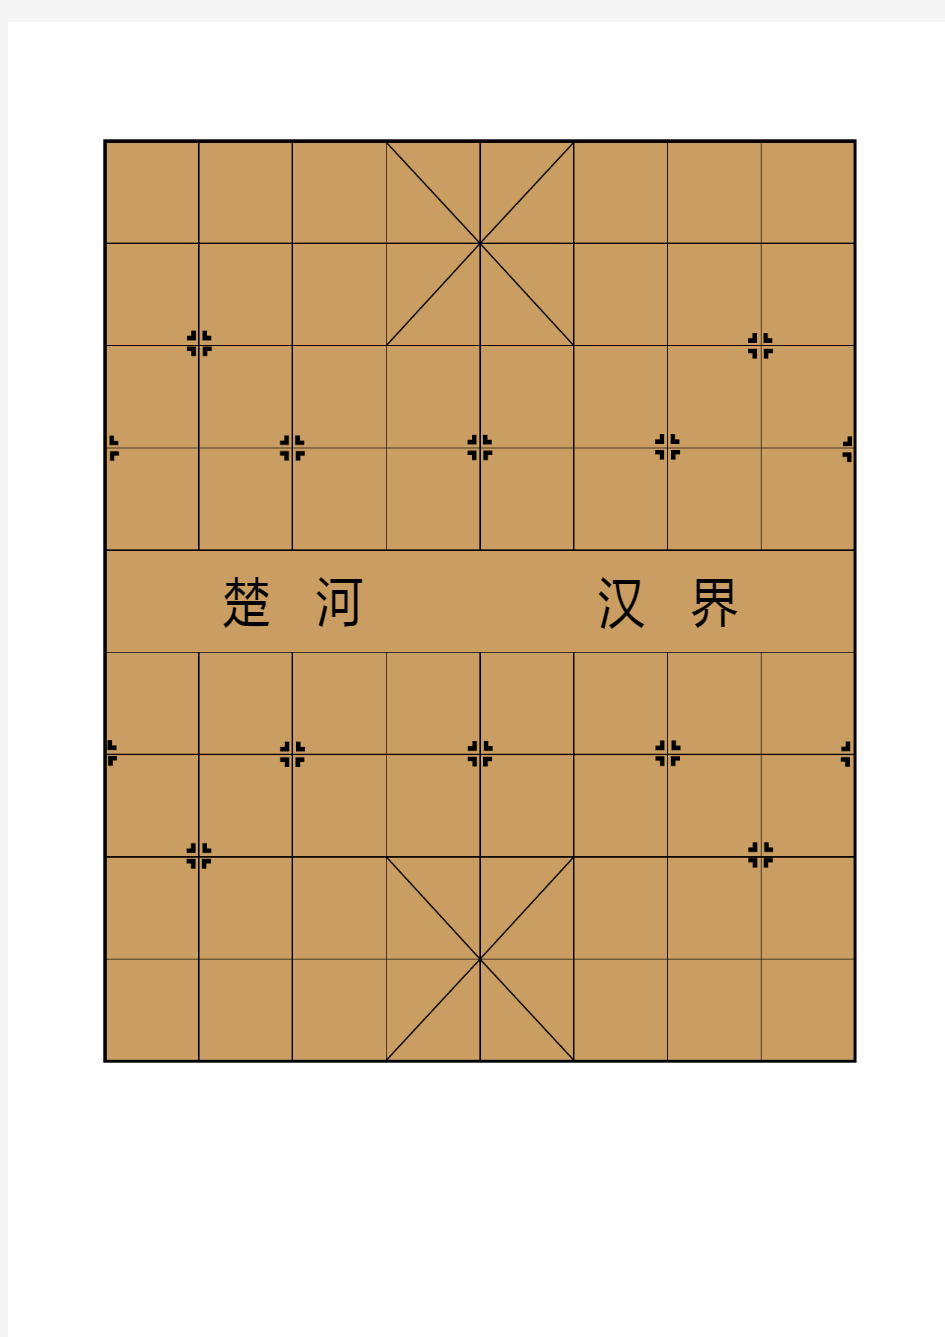 中国象棋棋盘